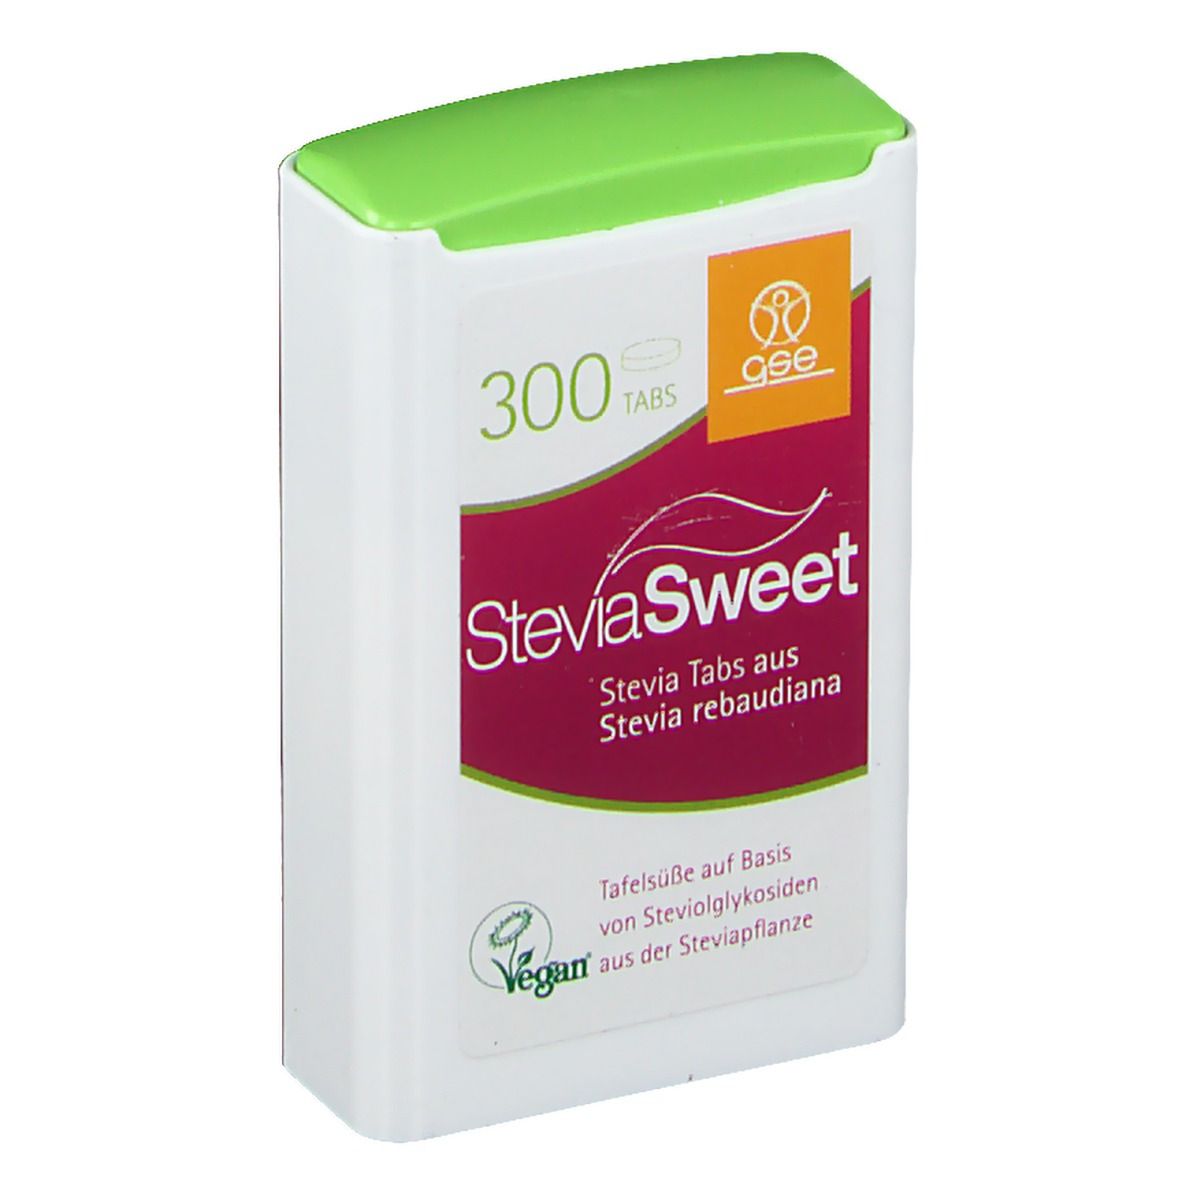 SteviaSweet Tabs